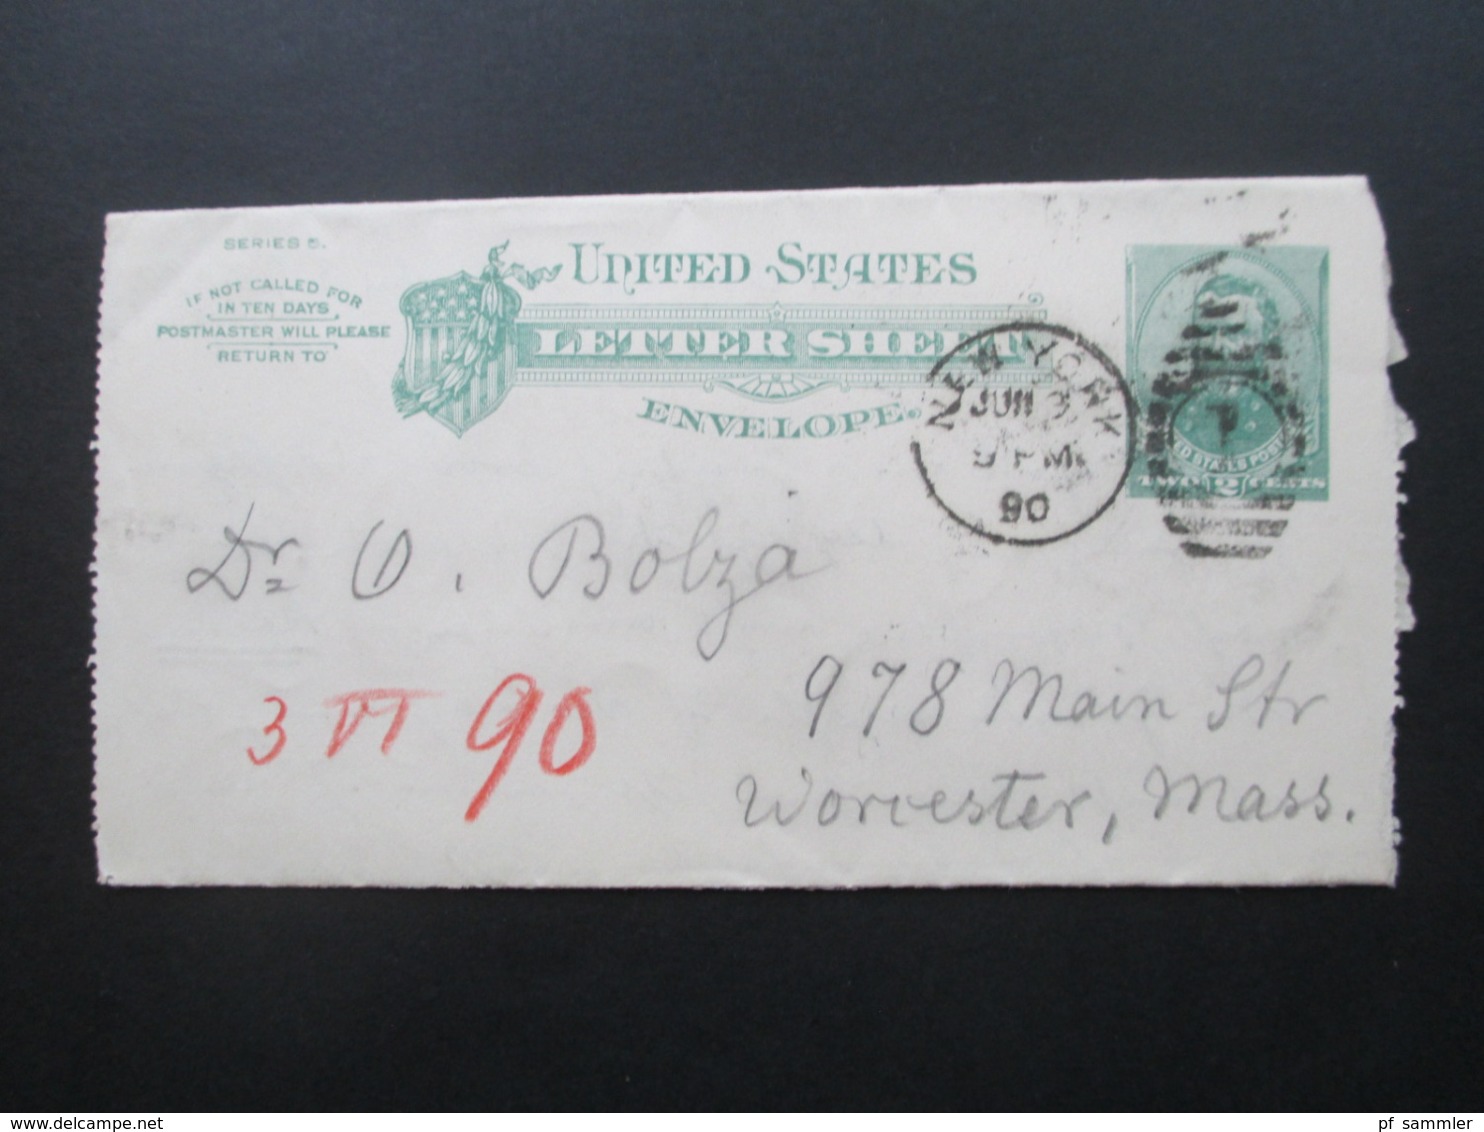 USA 1890 Letter Sheet Envelope New York - Worcester Mass Stempel Received Social Philately Dr. Oskar Bolza Mathematiker - Lettres & Documents